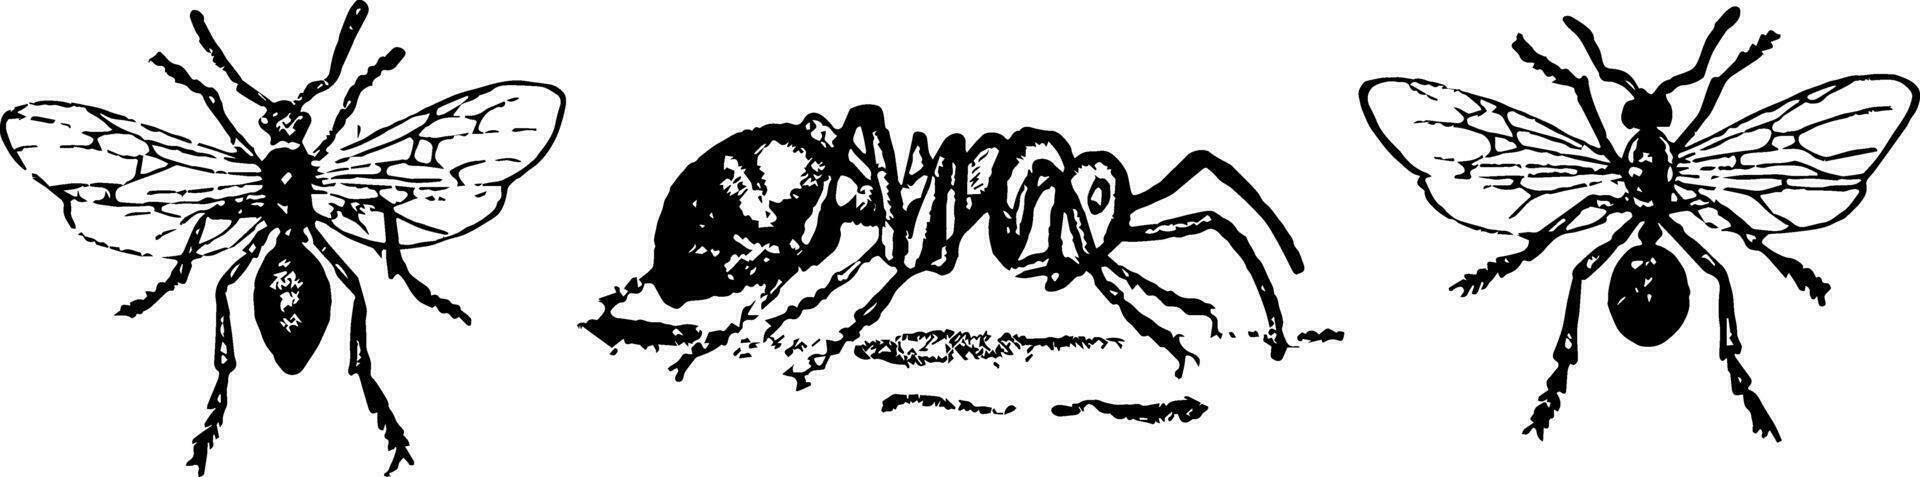 rouge fourmis, ancien illustration. vecteur